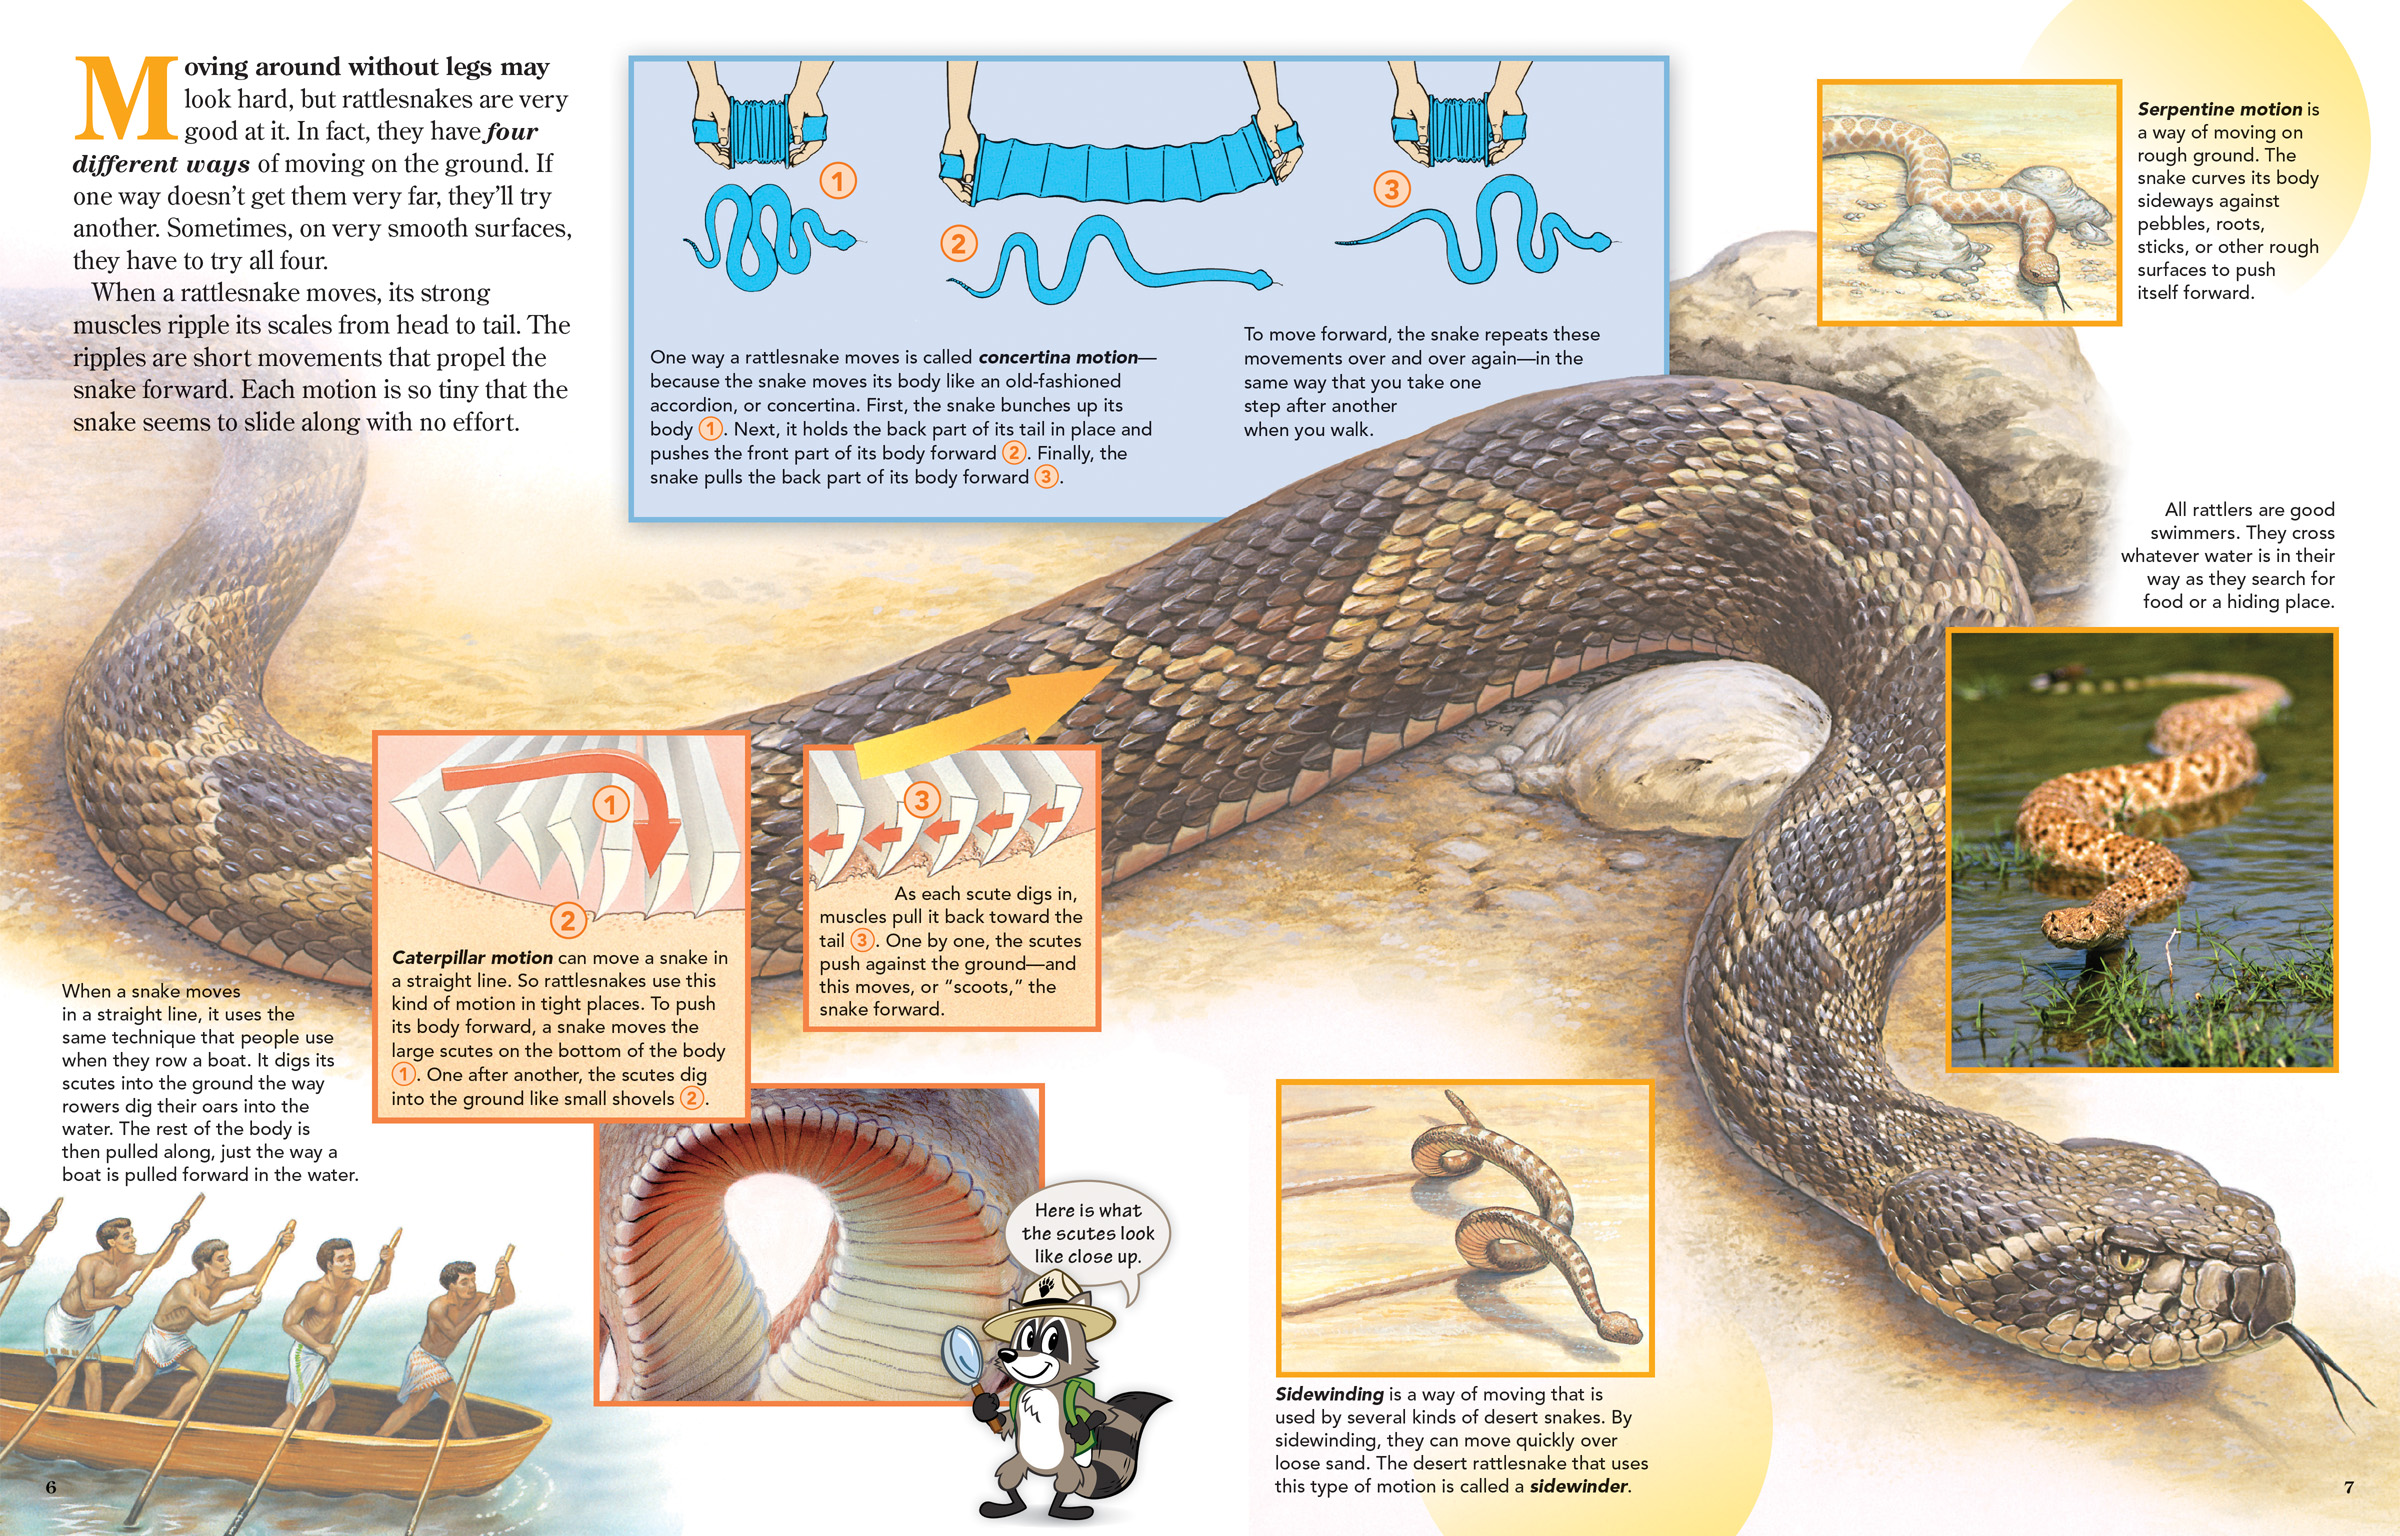 How Do Rattlesnakes Communicate?